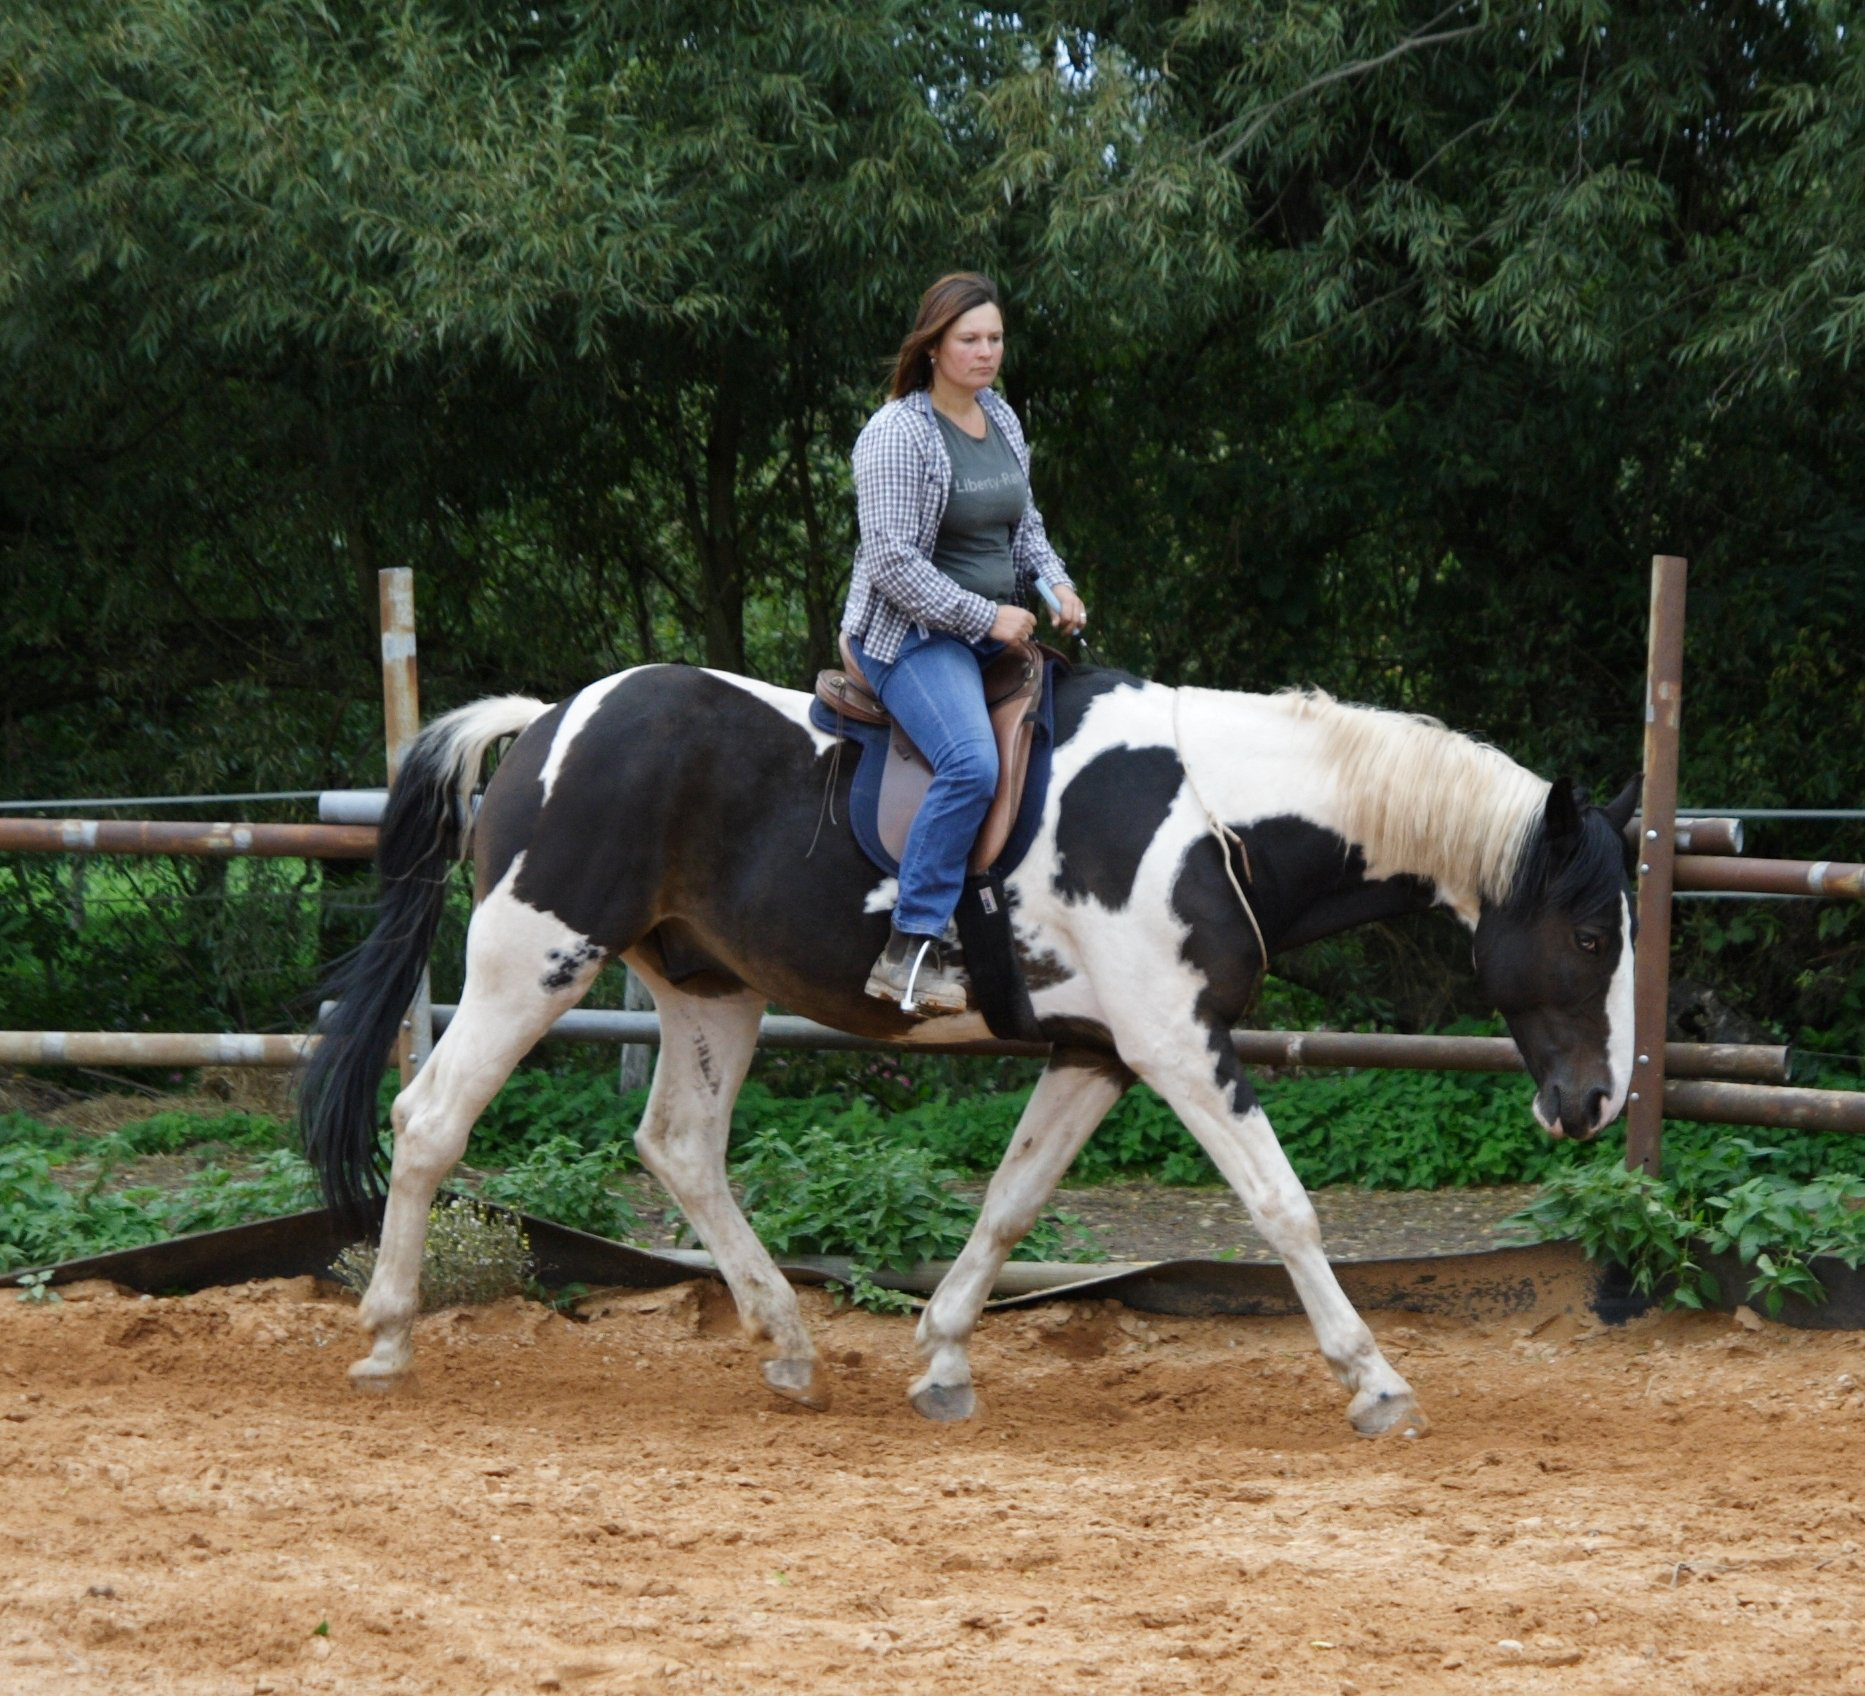 Horsemanship, alternativer Reitunterricht, Bodenarbeit, Reiten lernen ohne Angst